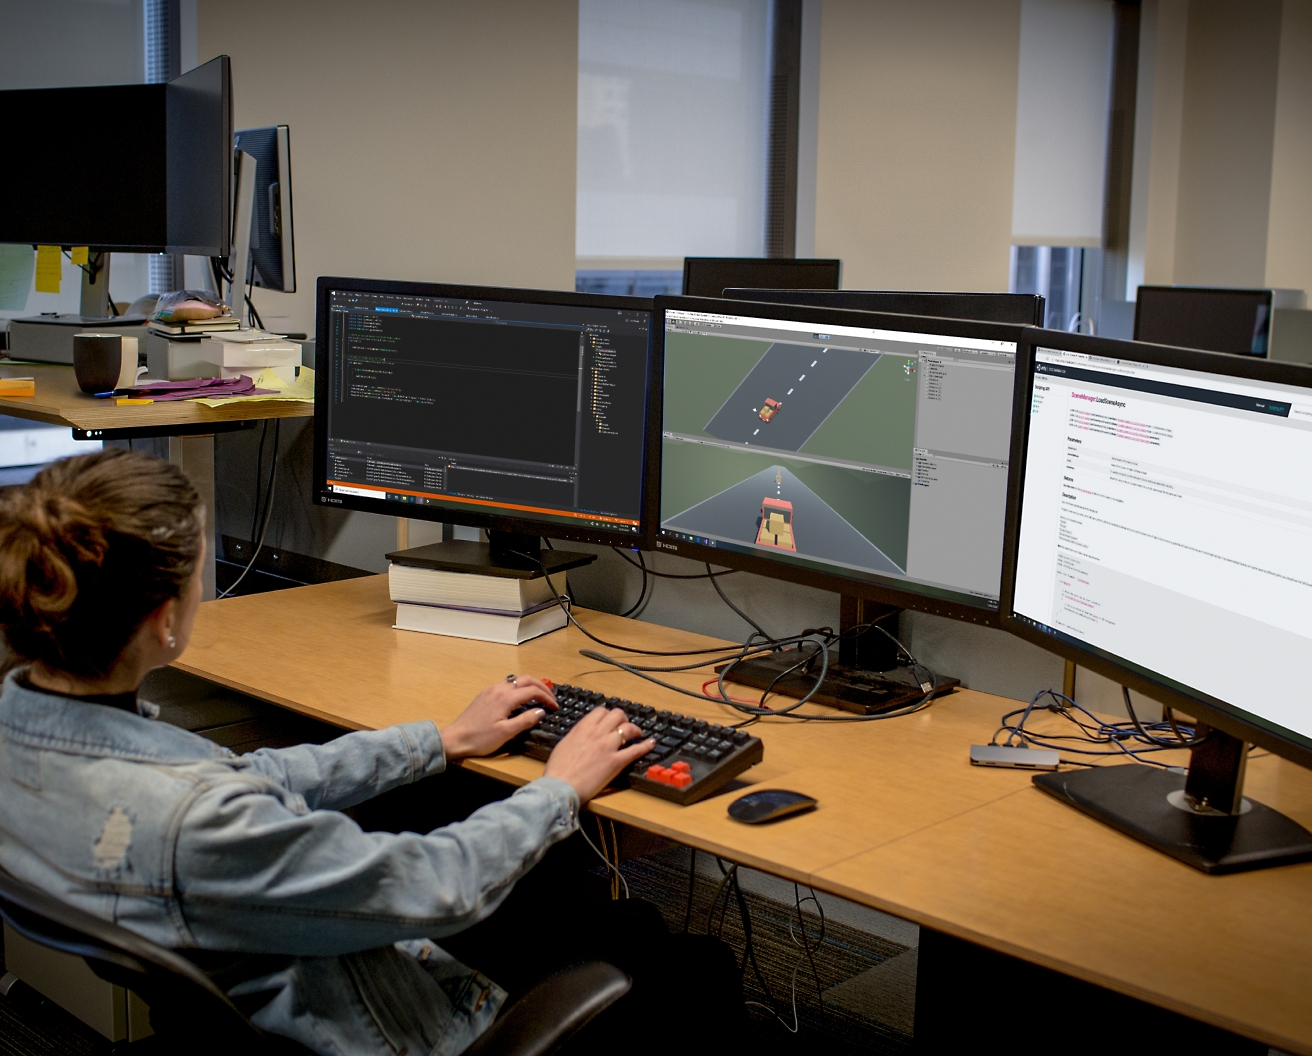 Une développeuse de logiciels travaillant dans un bureau, devant une configuration à plusieurs écrans, en train de coder et de déboguer des logiciels.